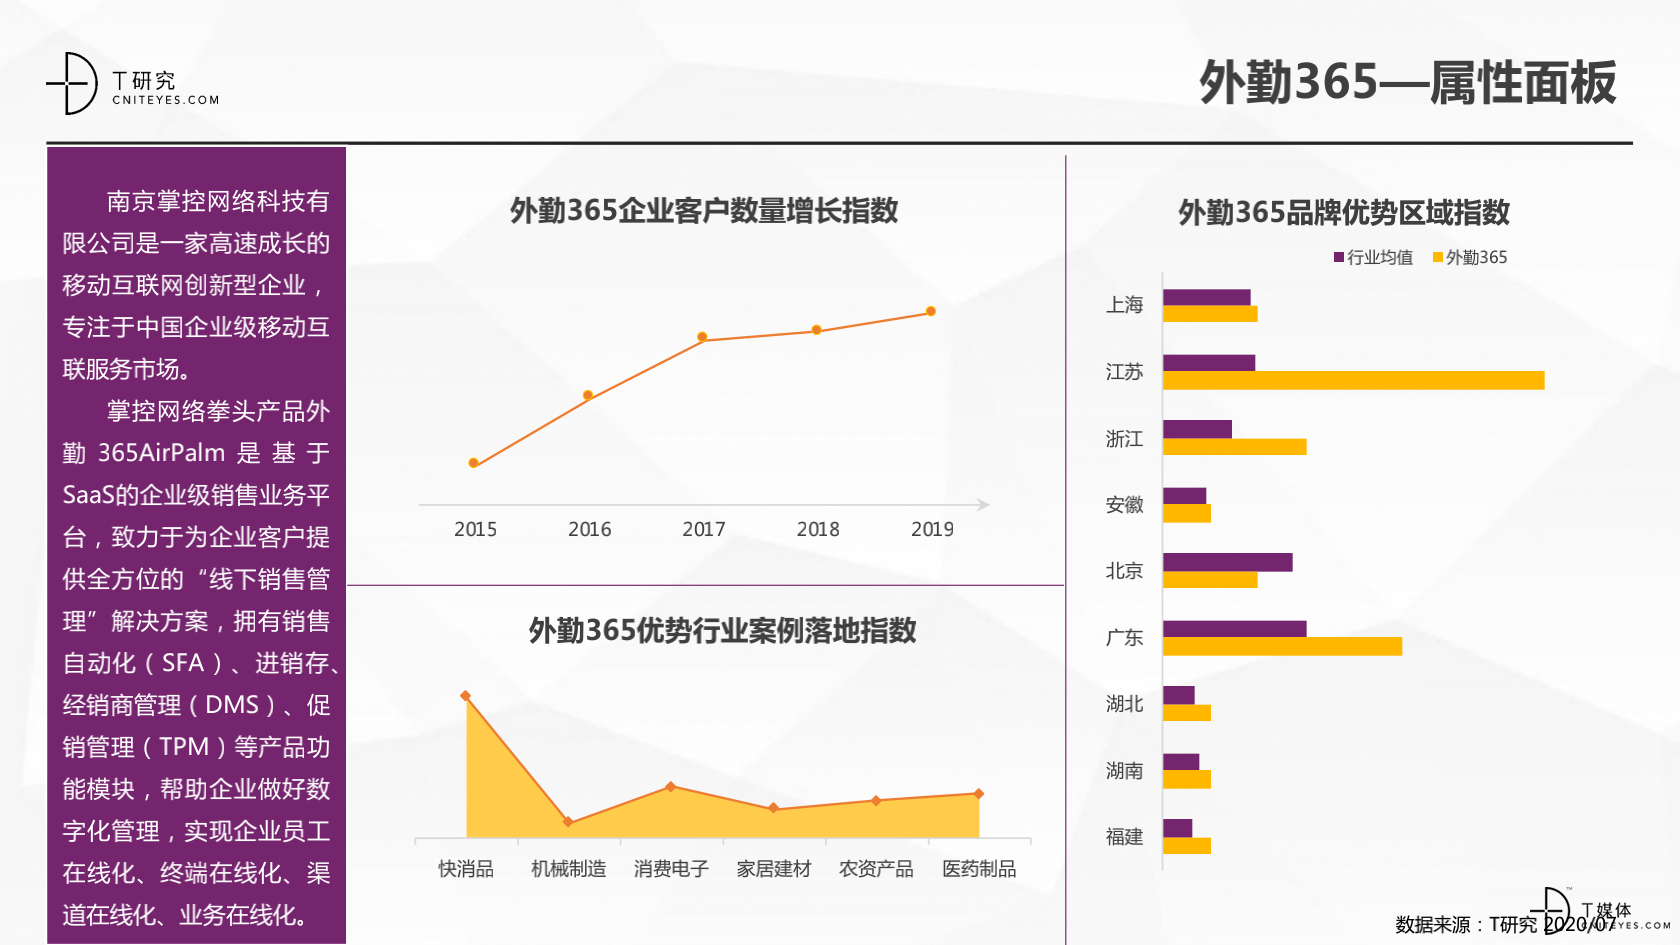 2_2020中国CRM指数测评报告v1.5_41.png